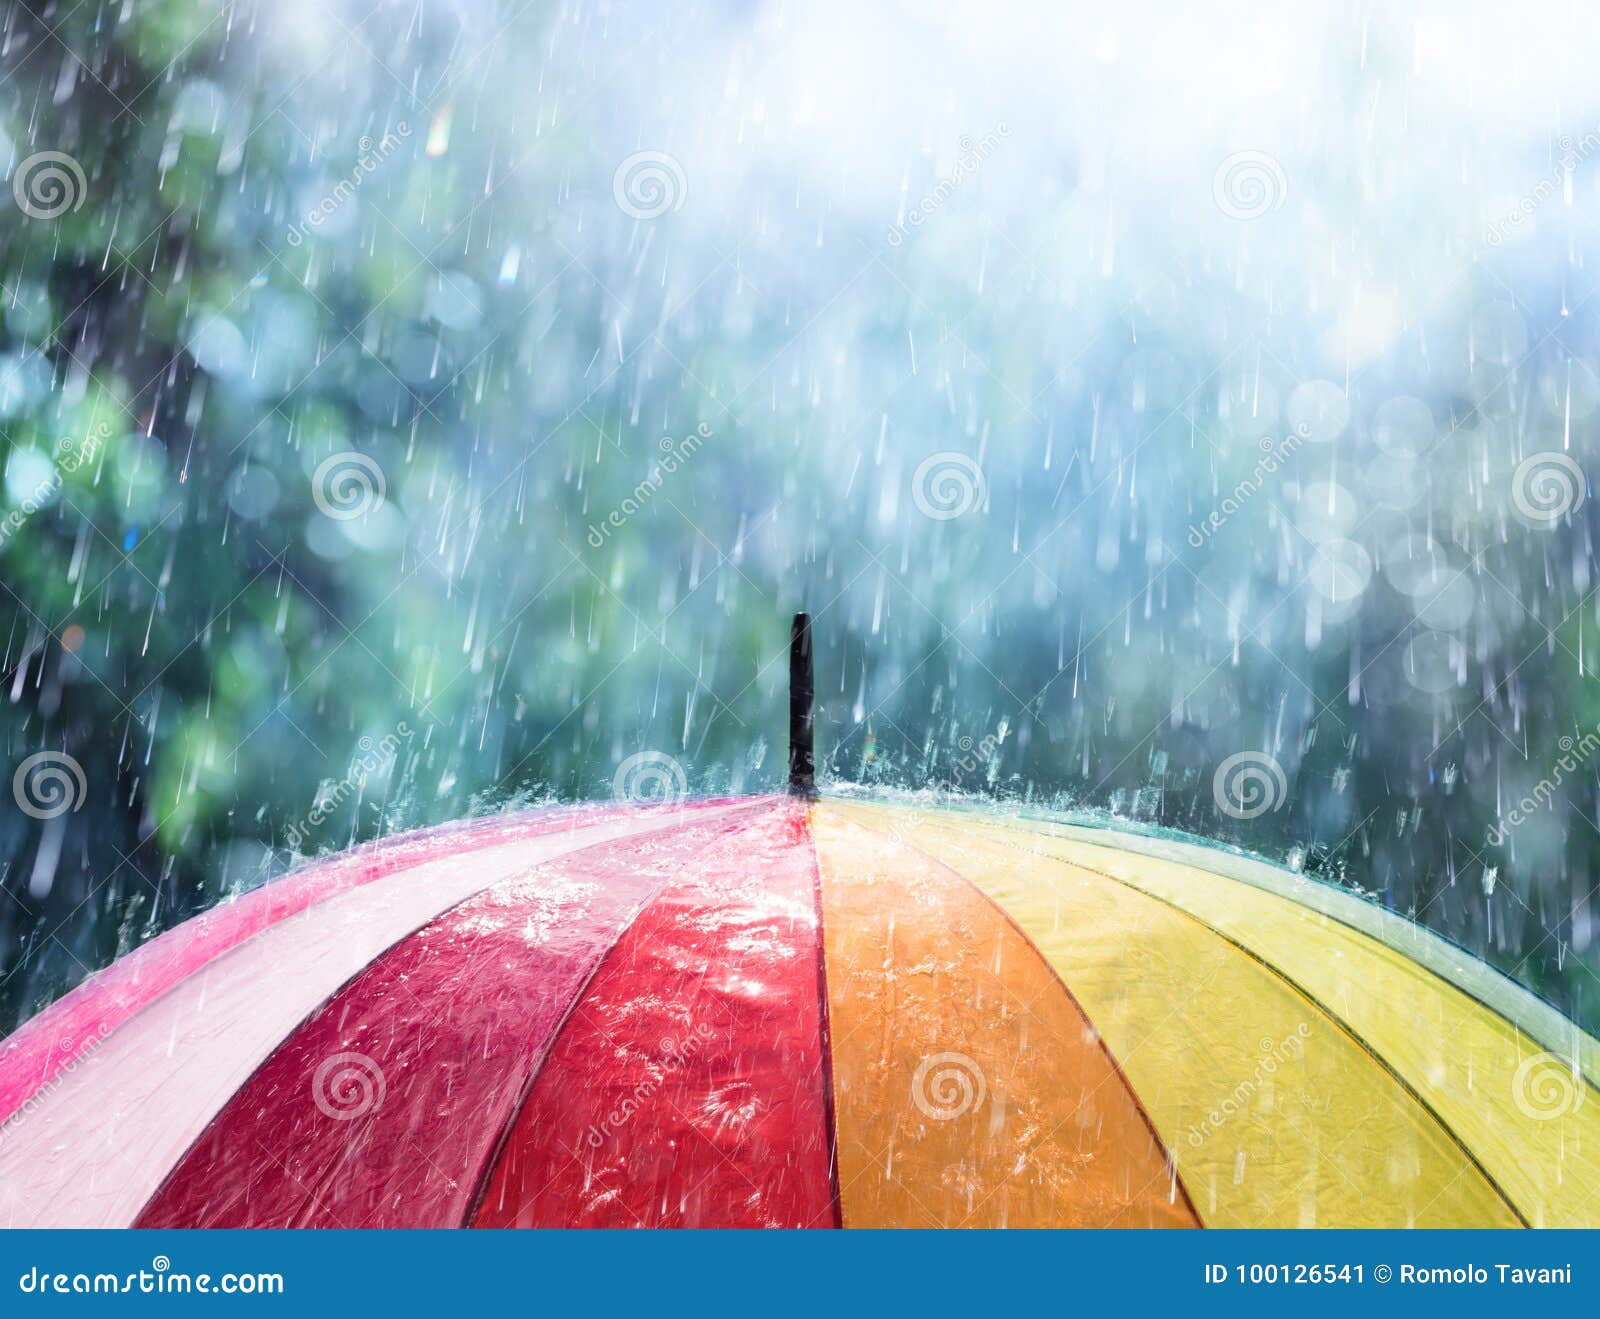 rain on rainbow umbrella